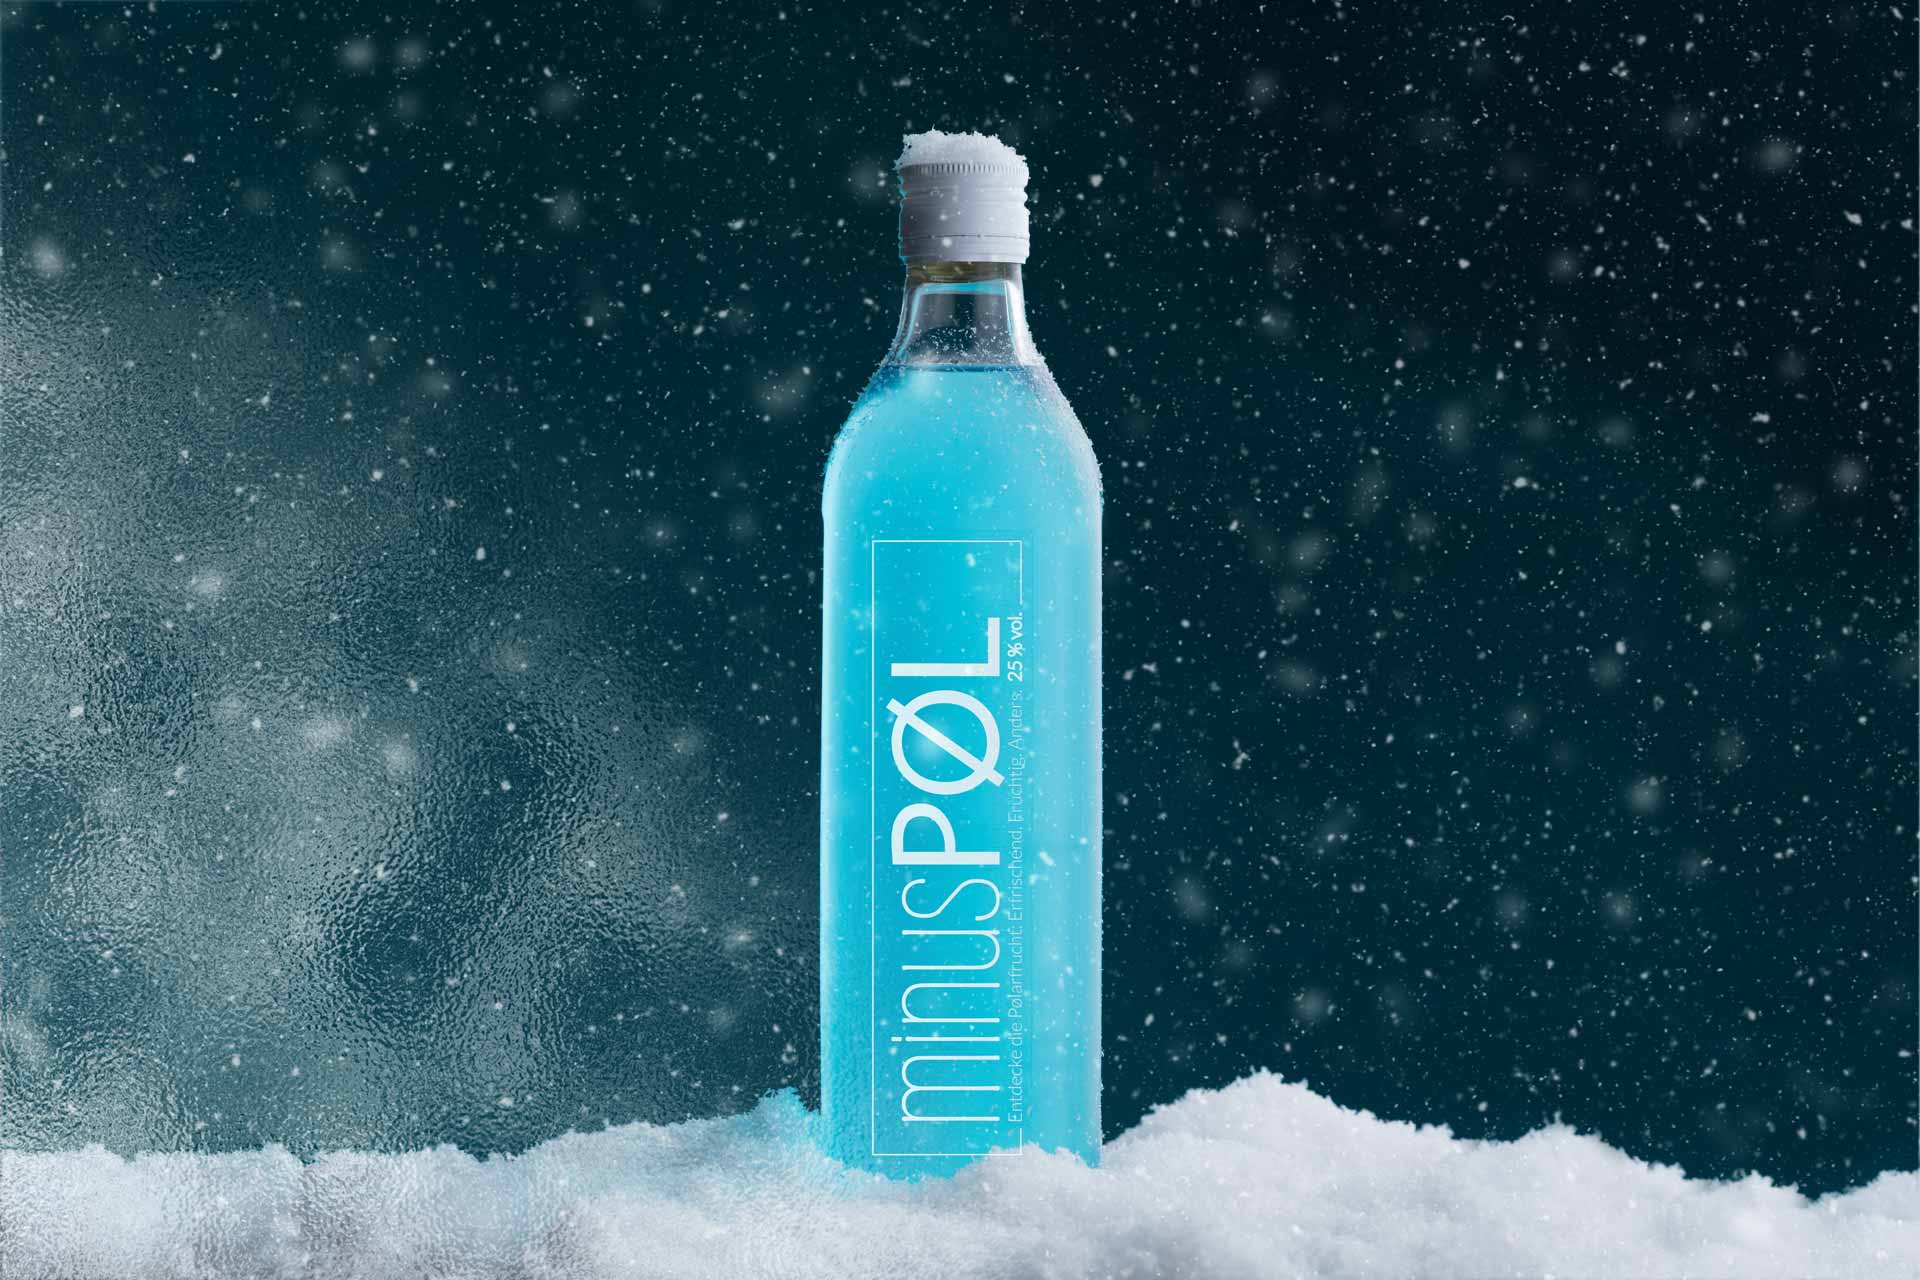 Minus Pol Schnaps Eis kalt blau Produkt Schnee Regensburg